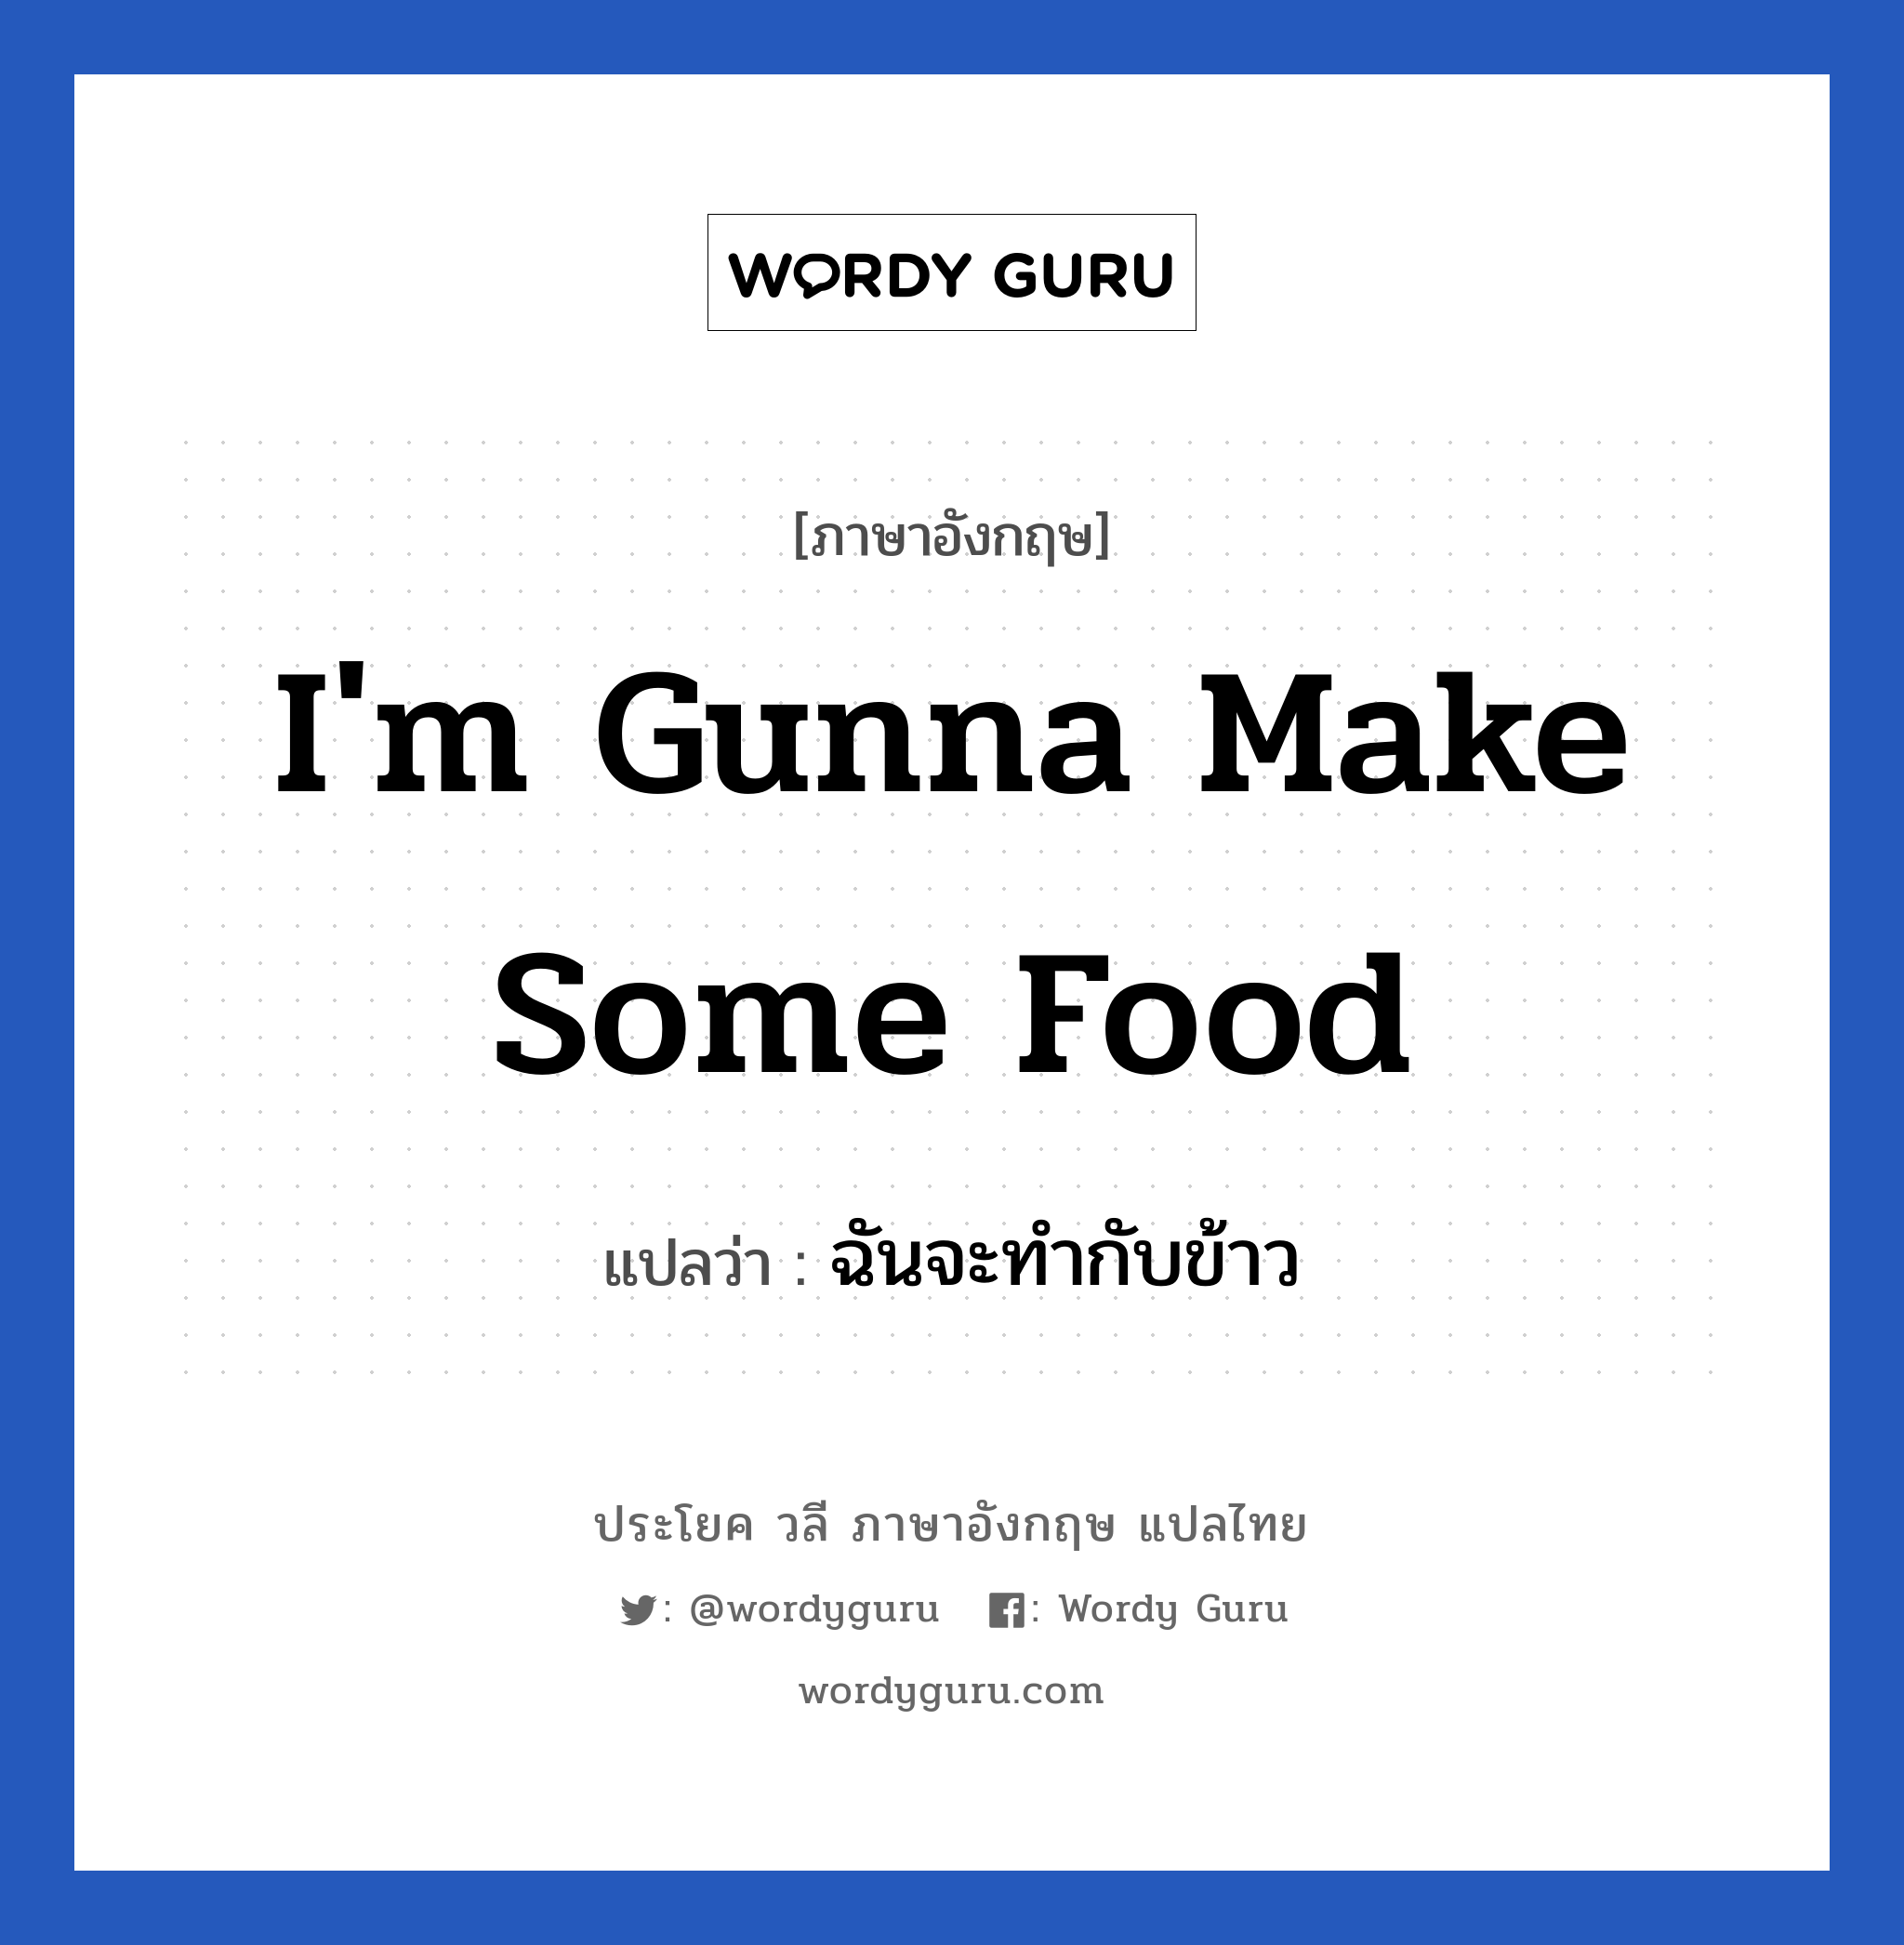 ฉันจะทำกับข้าว ภาษาอังกฤษ?, วลีภาษาอังกฤษ ฉันจะทำกับข้าว แปลว่า I'm gunna make some food